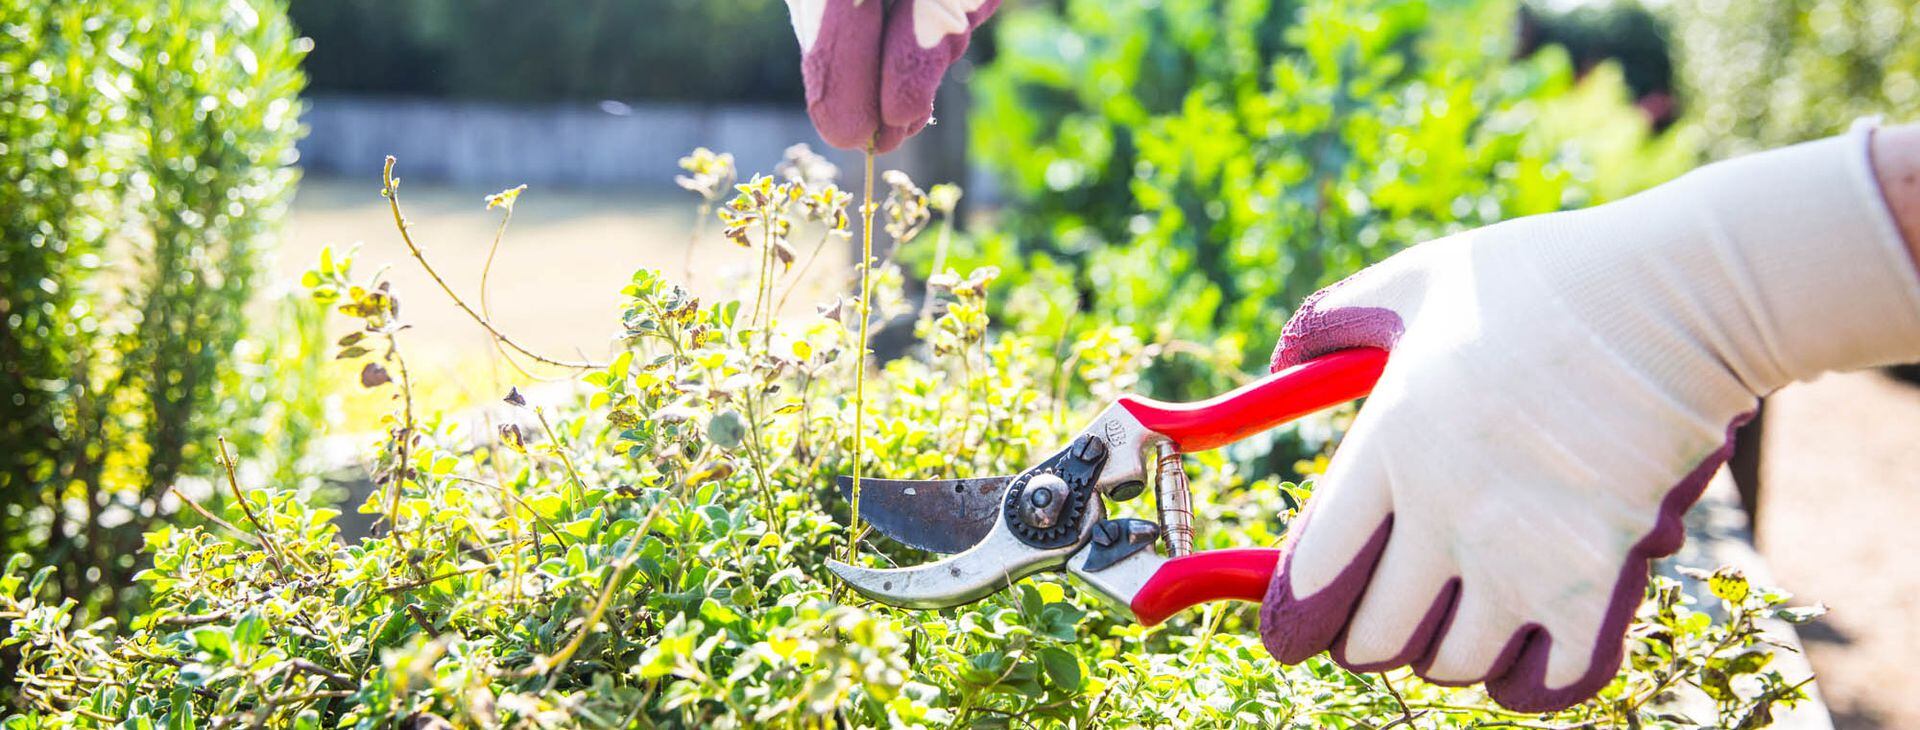 Jardinería en casa: armá tu kit ideal de herramientas - LA NACION